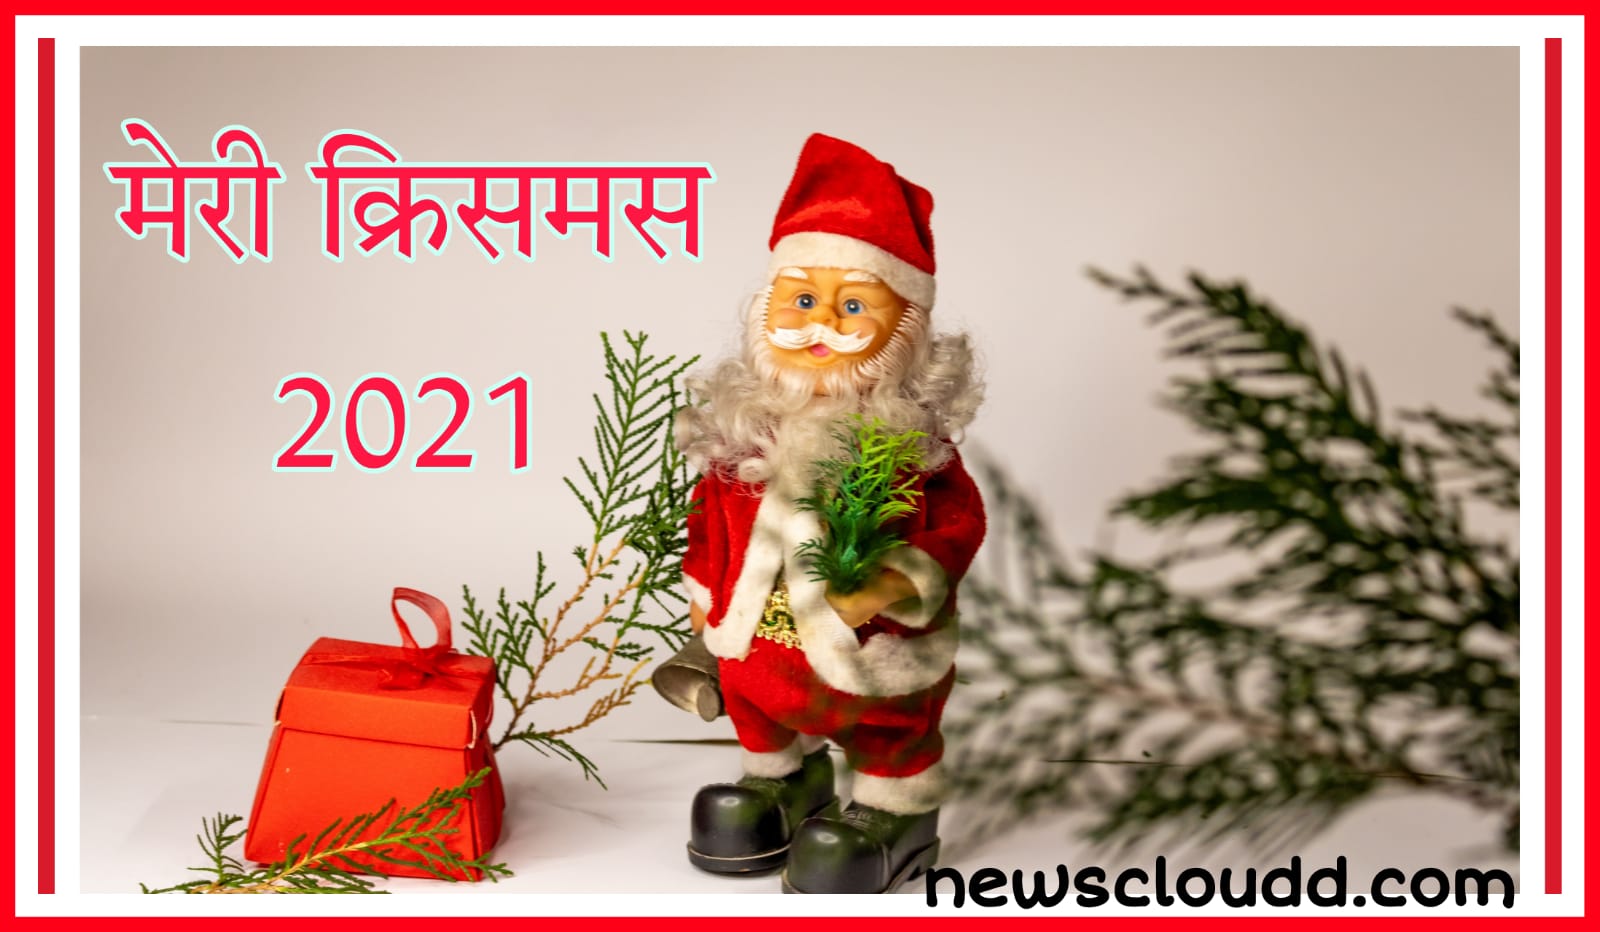 Merry Christmas 2021 Wishes In Hindi : अपनों के साथ मनाएं क्रिसमस, भेजें ये Quotes, GIF और Wishes